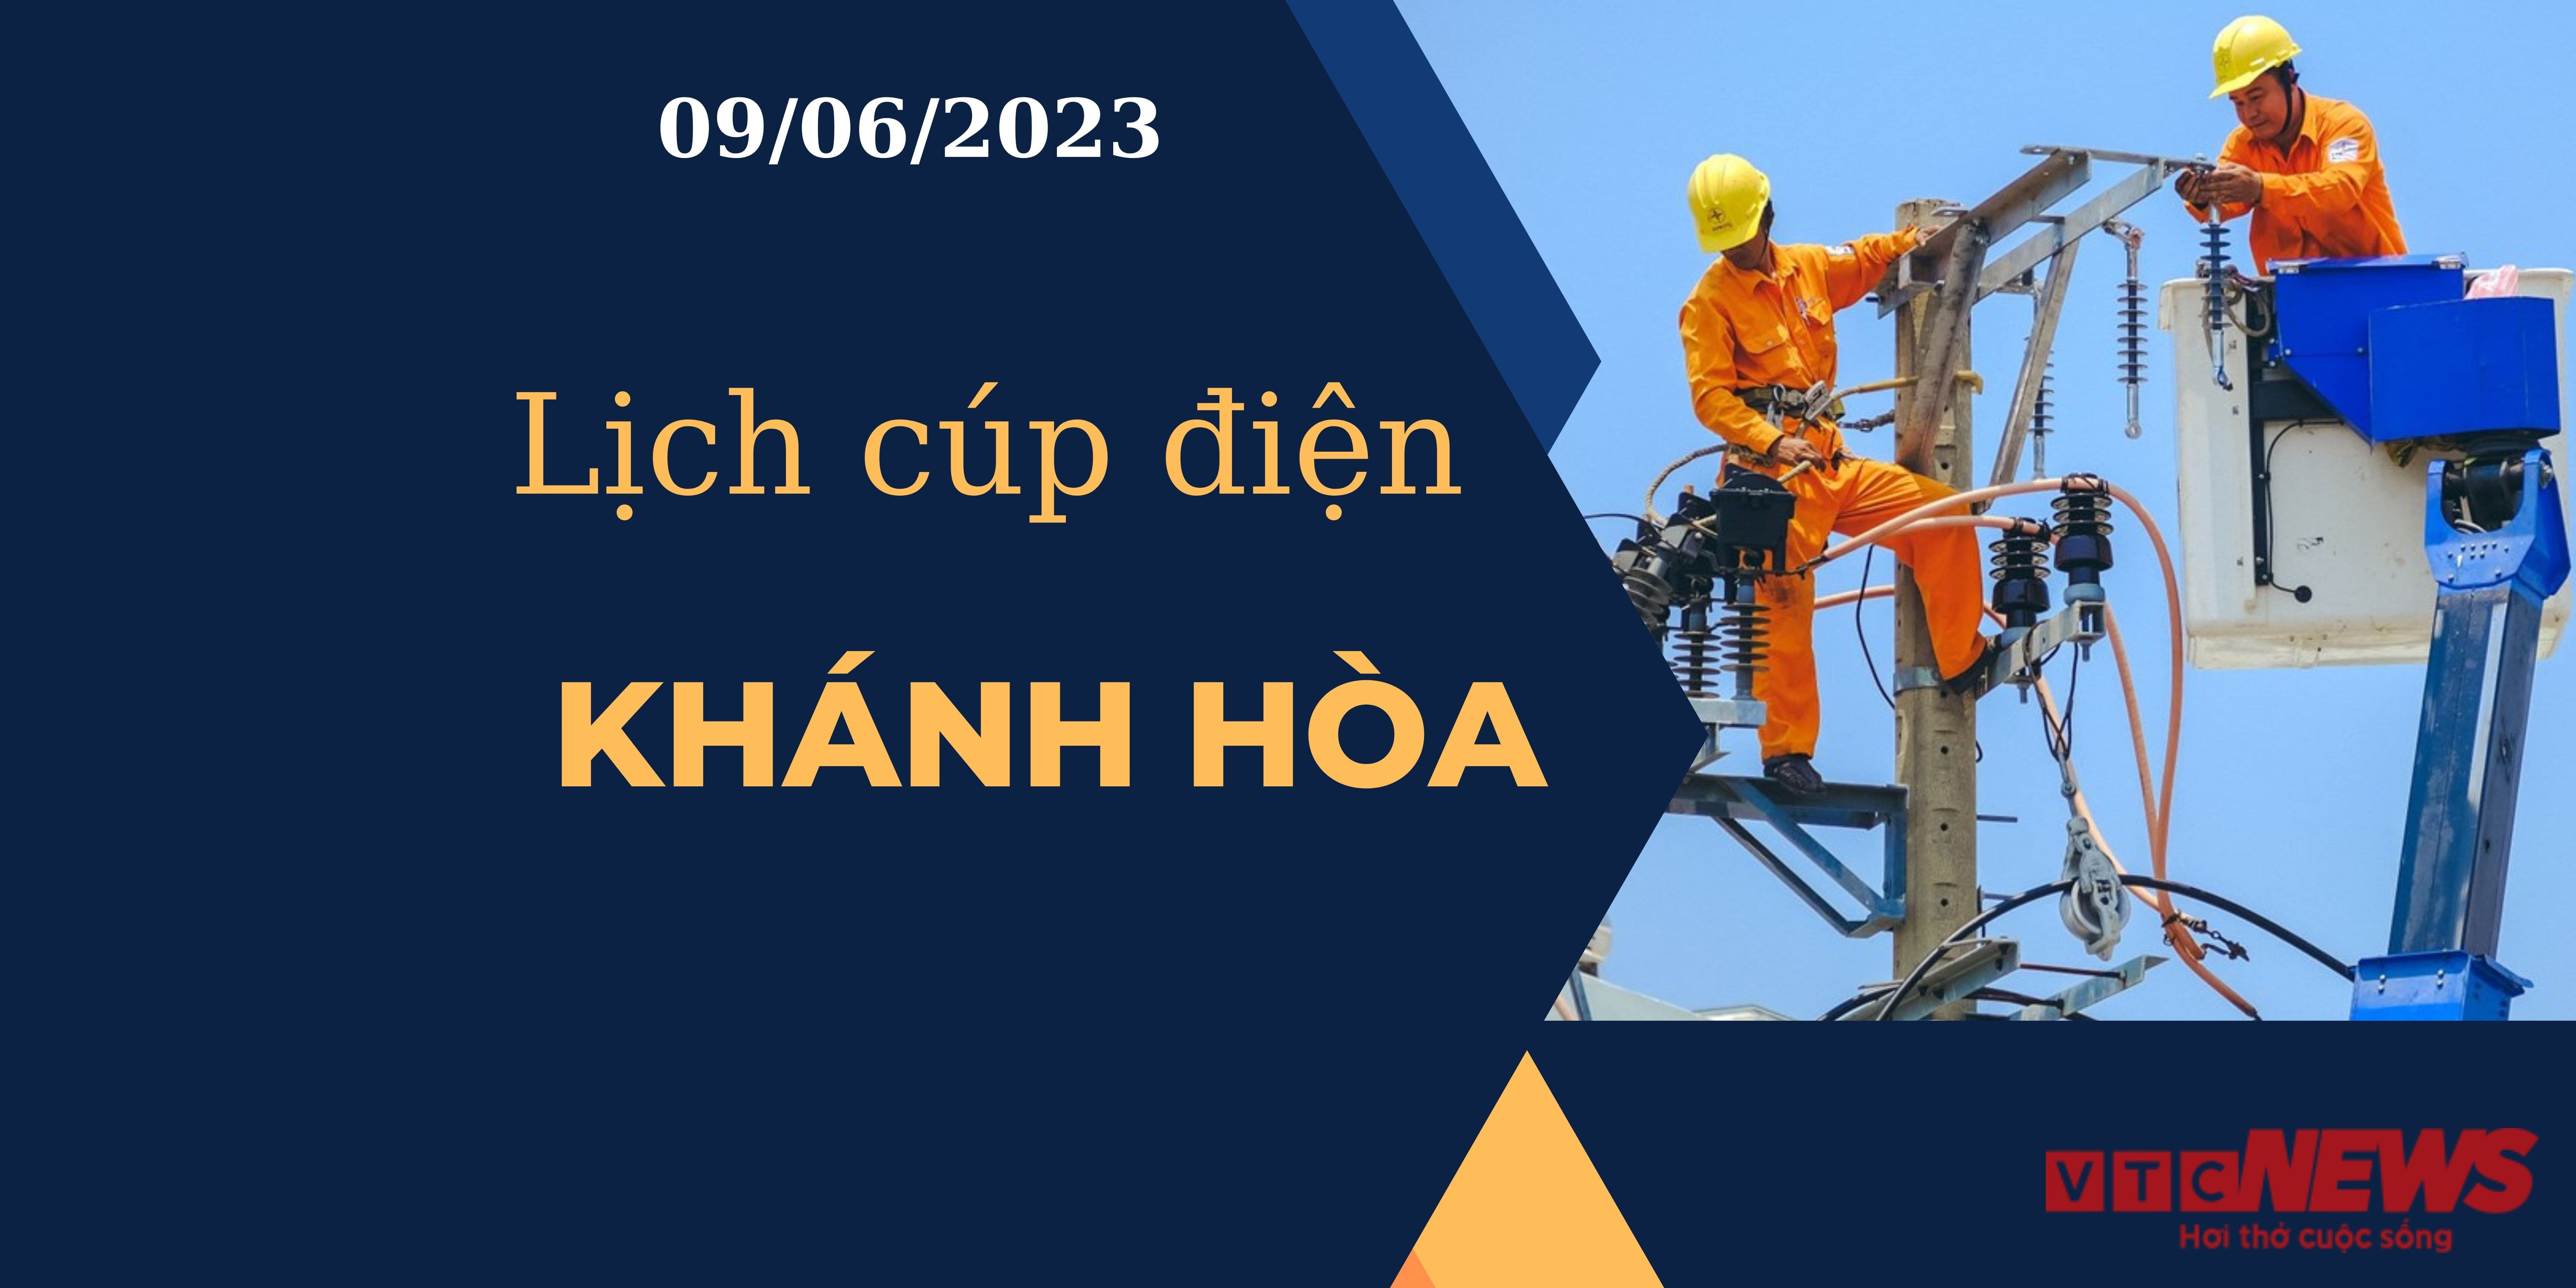 Lịch cúp điện hôm nay tại Khánh Hòa ngày 09/06/2023 - 1